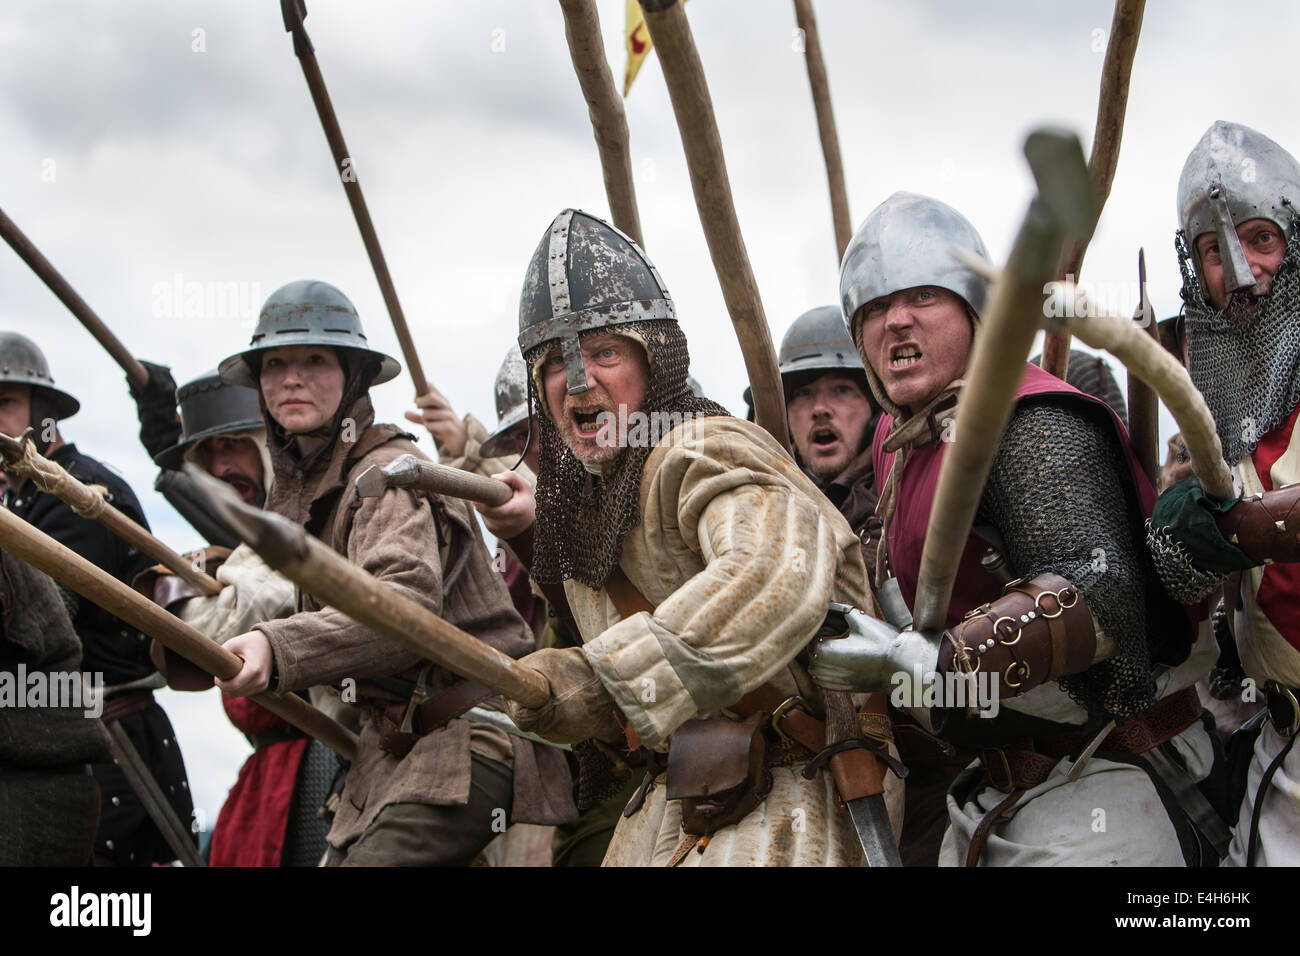 Reenactment der Schlacht von Bannockburn mit Robert The Bruce bei Bannockburn Leben 700 Jahre Gedenken an die Schlacht, Schottland. Stockfoto